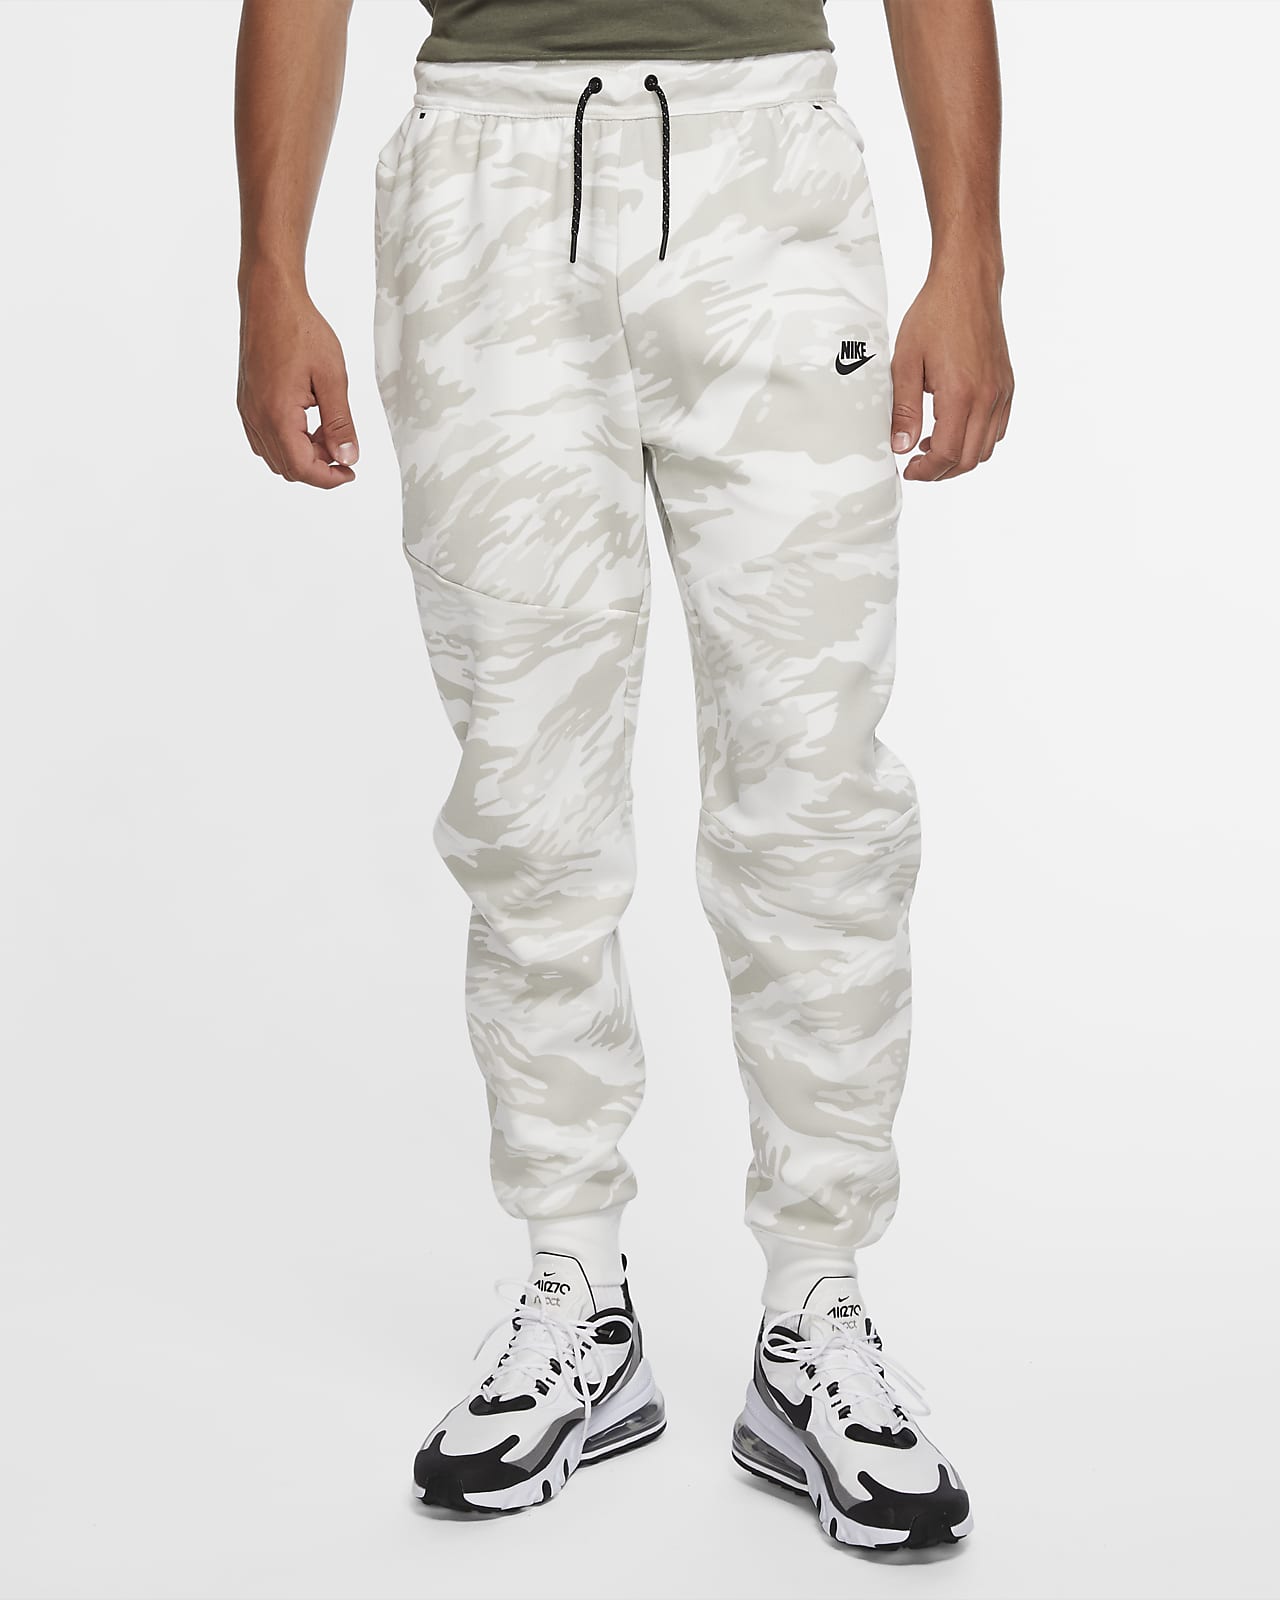 nike tech fleece white pants